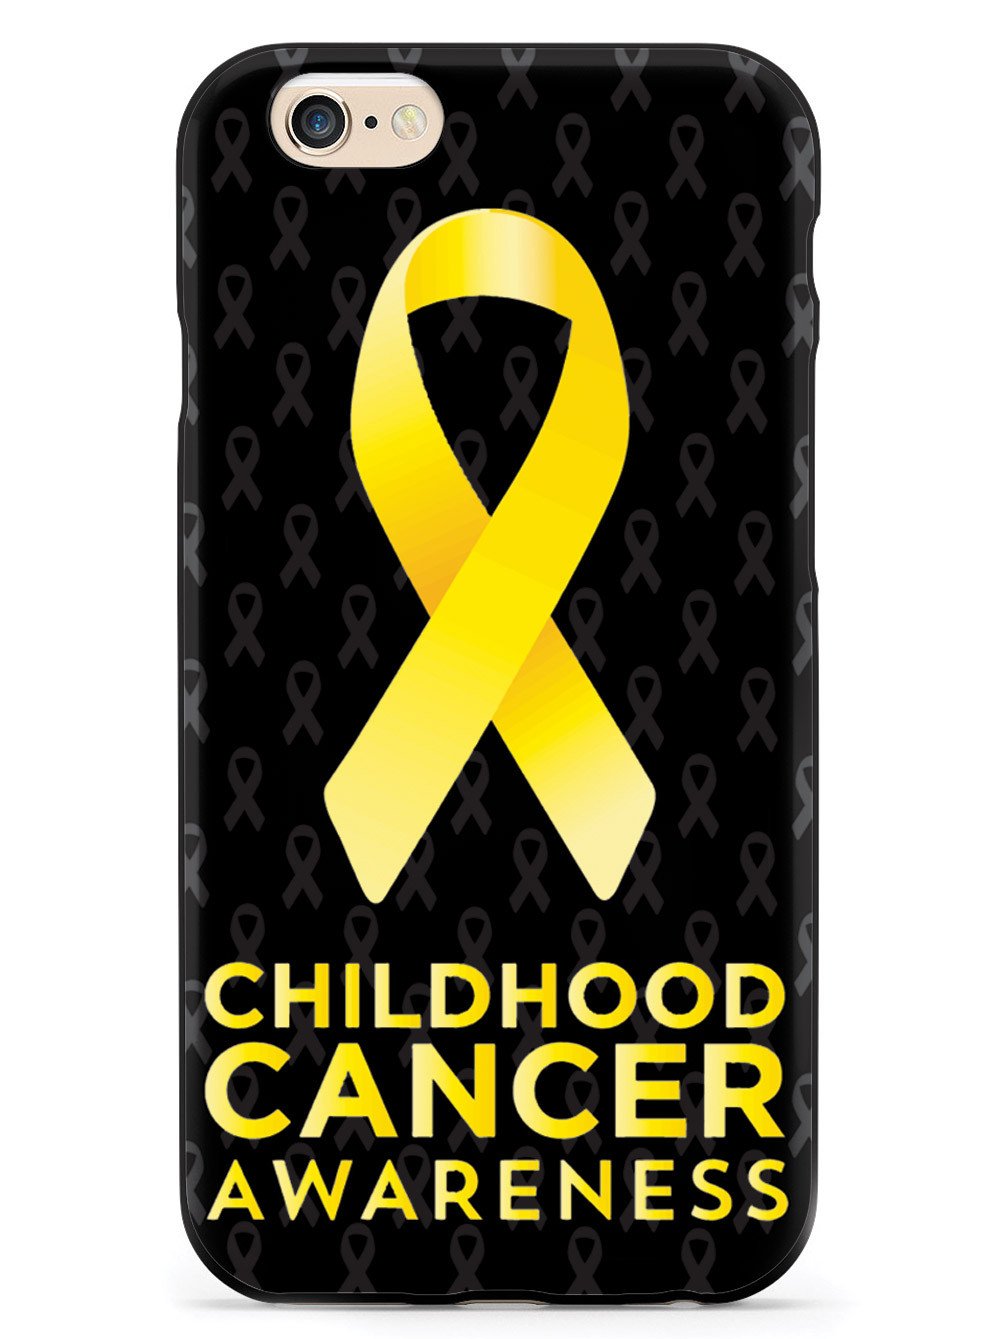 Childhood Cancer Awareness Case